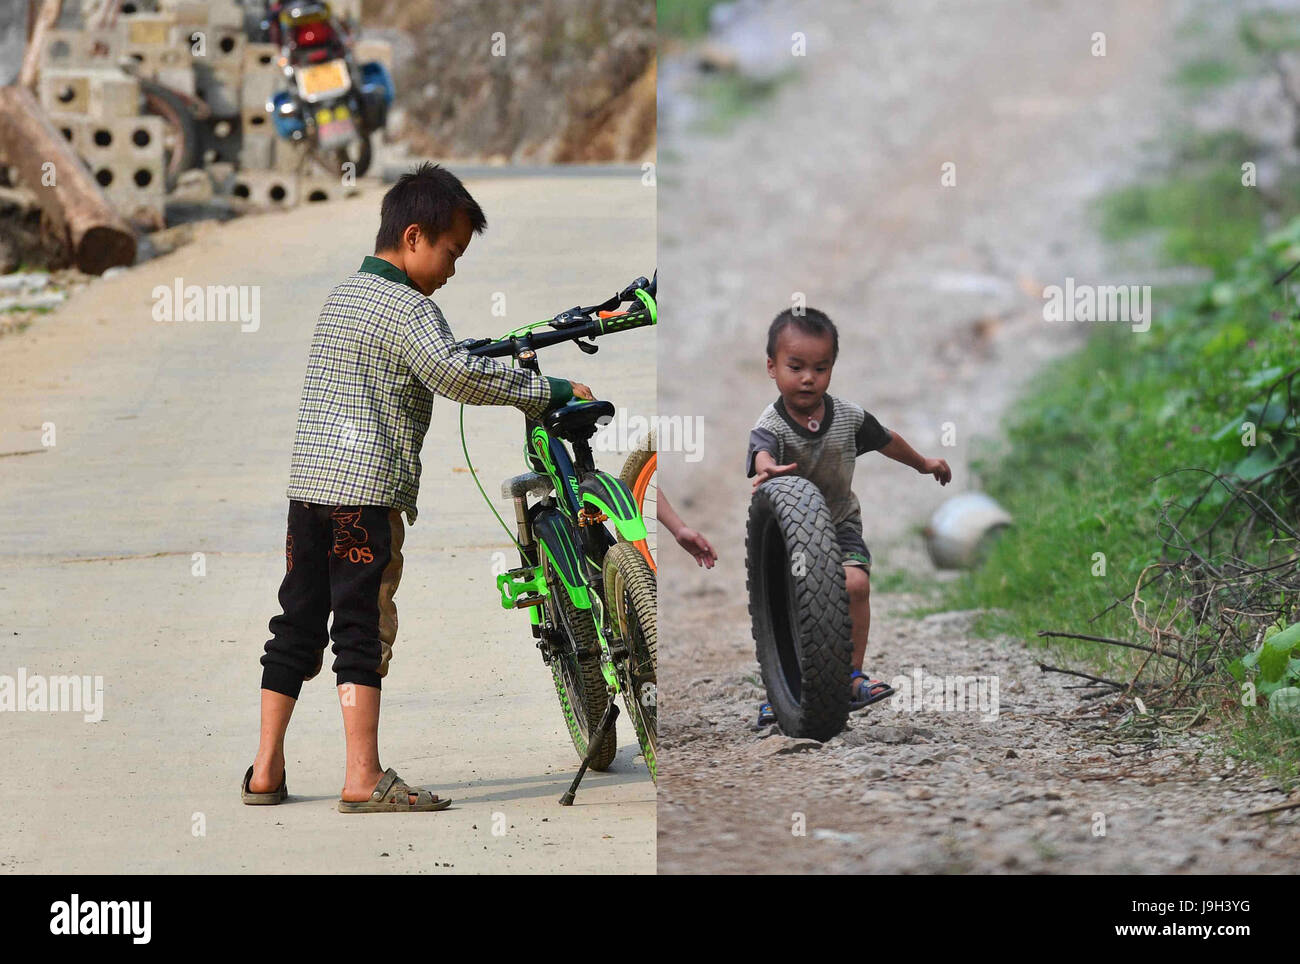 (170602) -- NANNING, Giugno 2, 2017 (Xinhua) -- combinati mostra fotografica Xiaoshuai Lan giocando con la sua bicicletta il 25 gennaio, 2017 (L) e se stesso sulla luglio 16, 2012 Nongyong nel villaggio di Dahua County, a sud della Cina di Guangxi Zhuang Regione autonoma. I bambini che vivono in miseria, regione montuosa nel Guangxi hanno testimoniato la loro vita girare nuovo di zecca negli ultimi sette anni, con i loro bisogni fondamentali per la vita e la scuola soddisfatto grazie alla riduzione della povertà gli sforzi del governo locale. Liscia strade rurali e nutriente e pranzo a scuola sono diventati nuovi ricordi di infanzia. Totale della popolazione povera Foto Stock